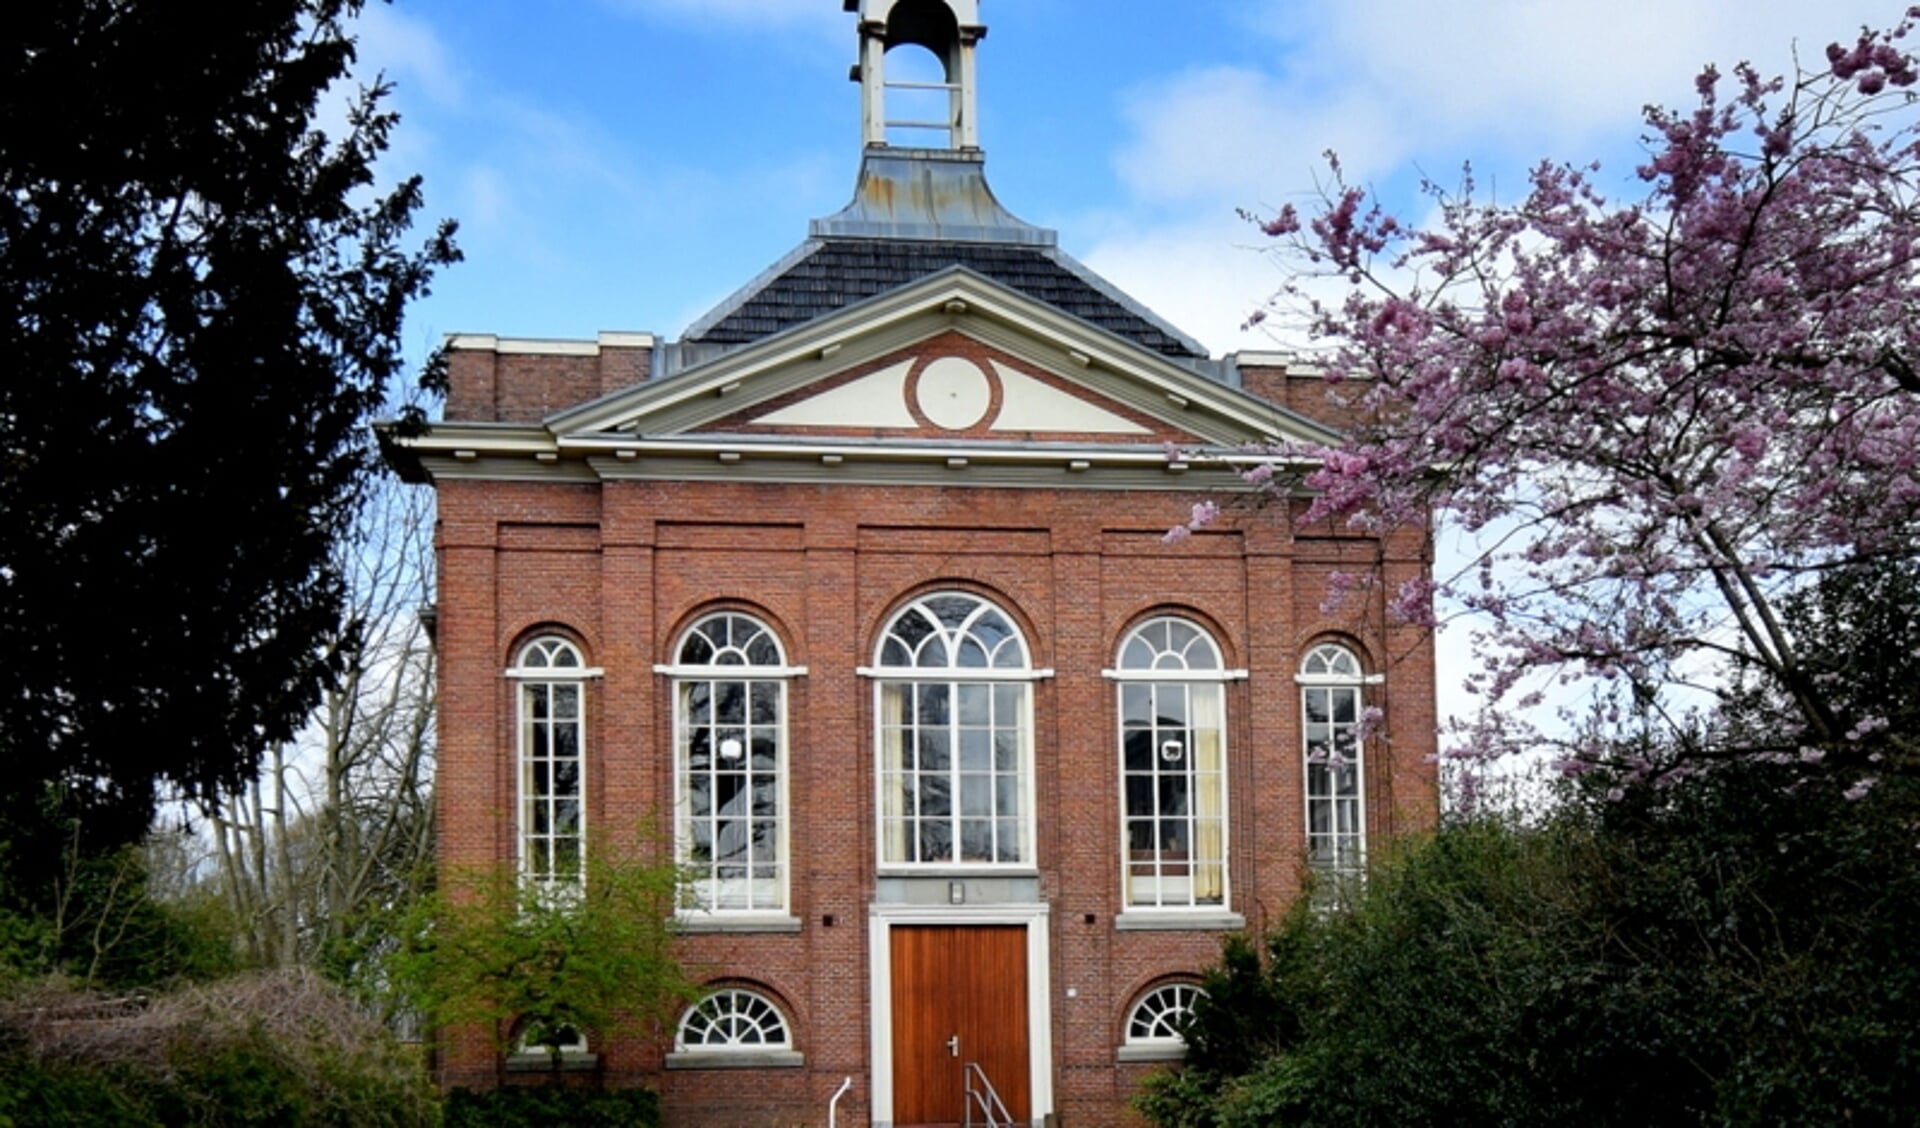 De Doopsgezinde kerk in Sappemeer is één van de Rijksmonumenten die in 2021 subsidie ontvingen voor groot onderhoud.